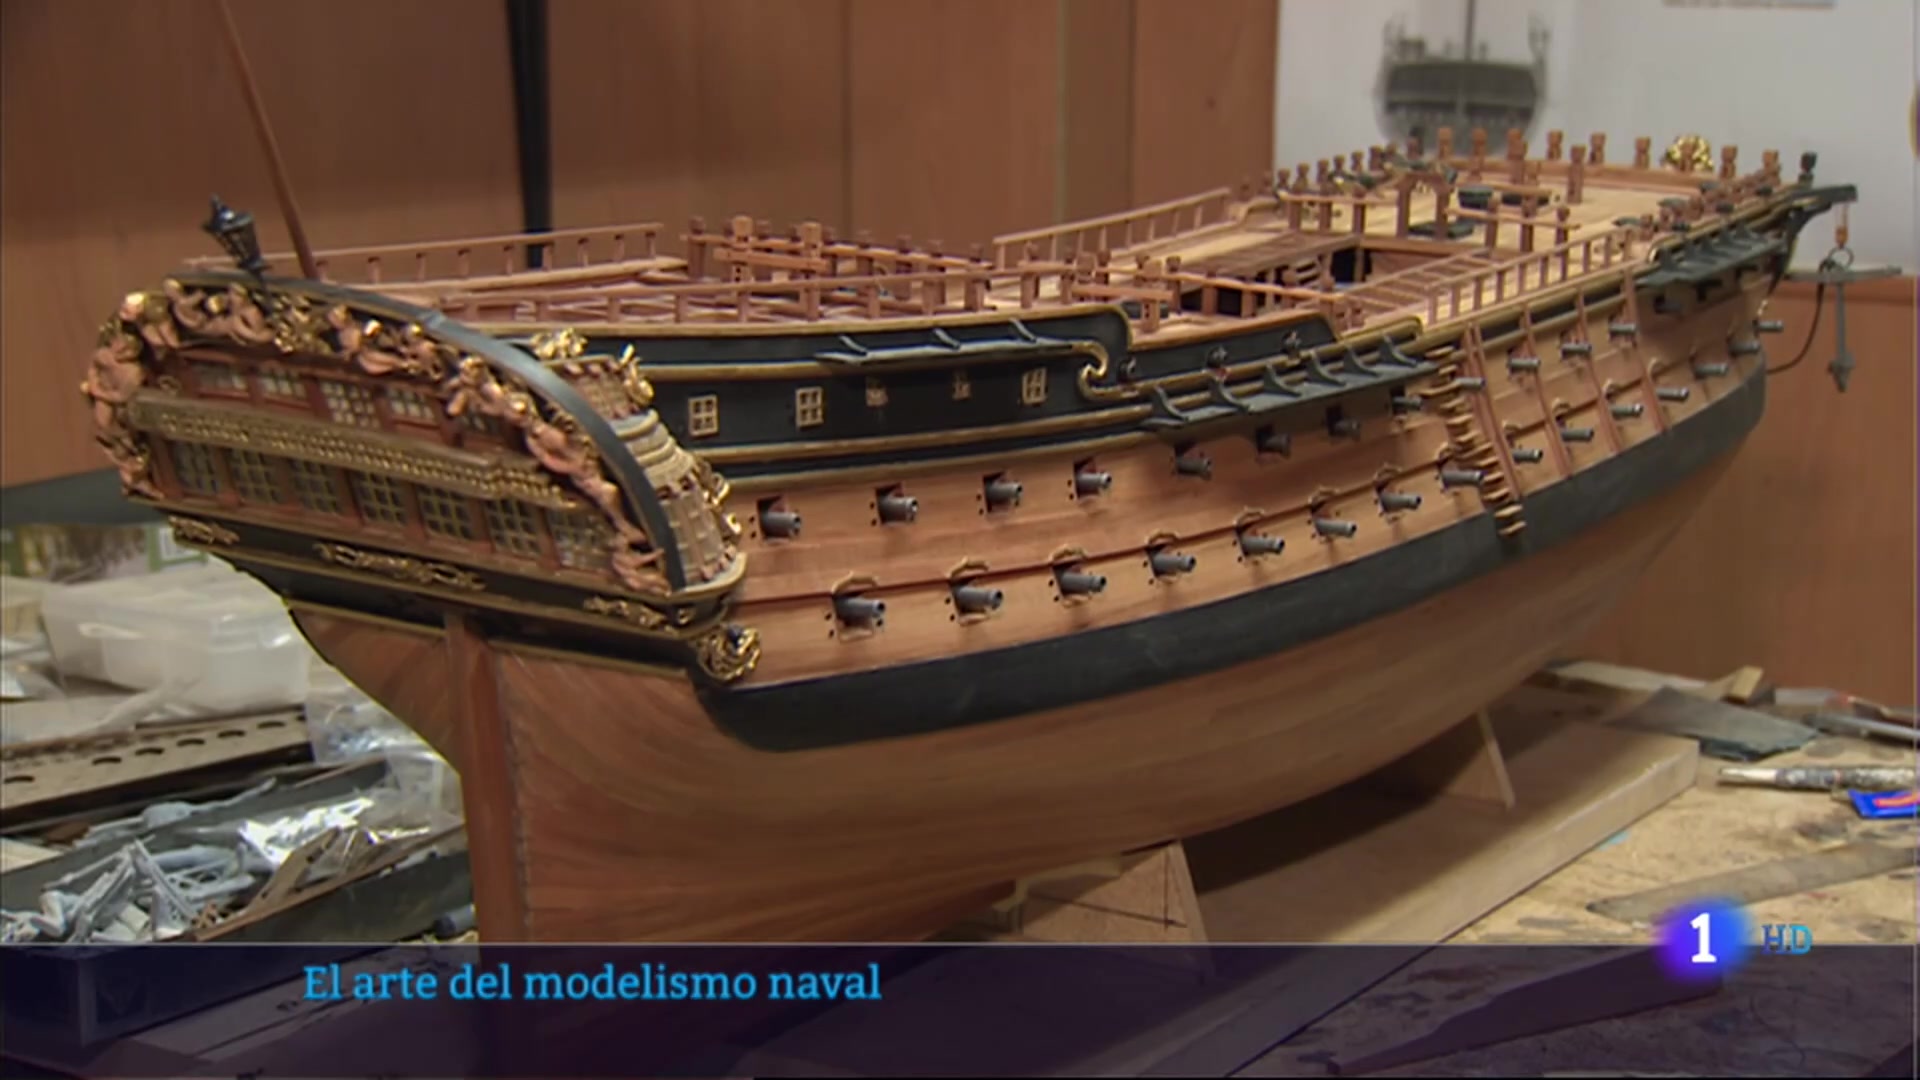 autopista desempleo eternamente Curro Agudo nos enseña el arte del modelismo naval